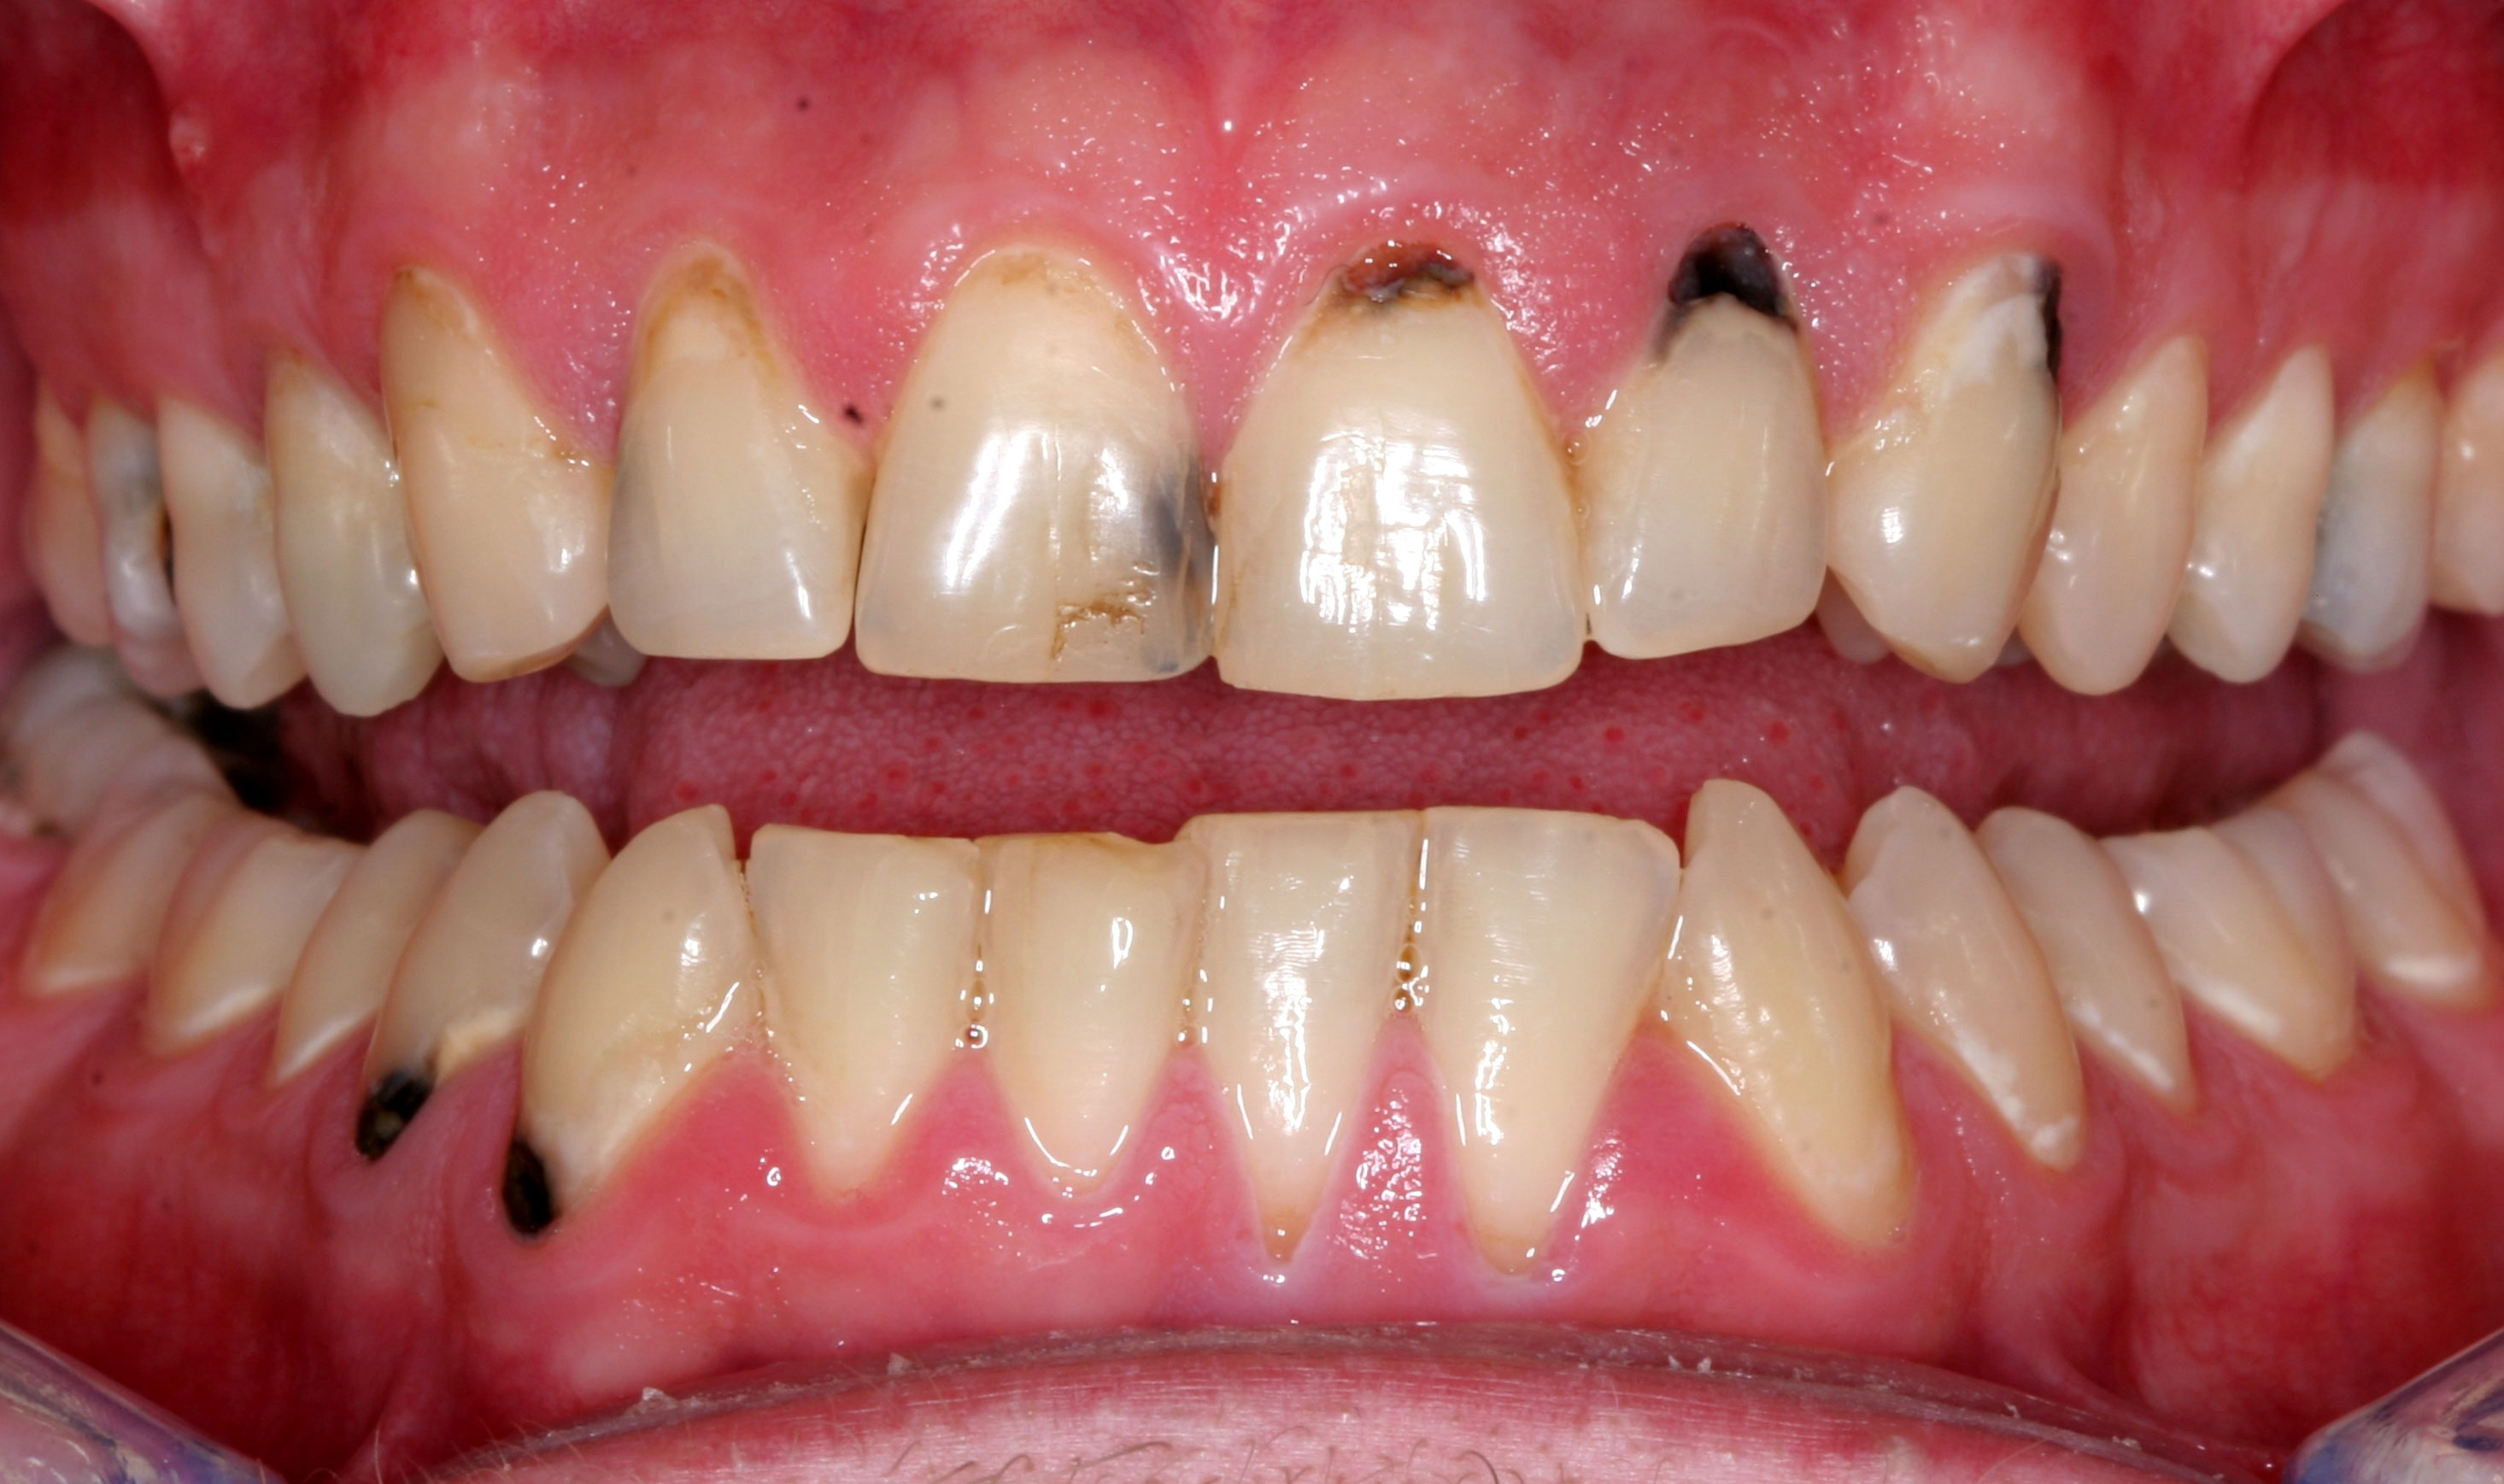 Viêm lợi sau khi bọc răng sứ là tình trạng khá phổ biến